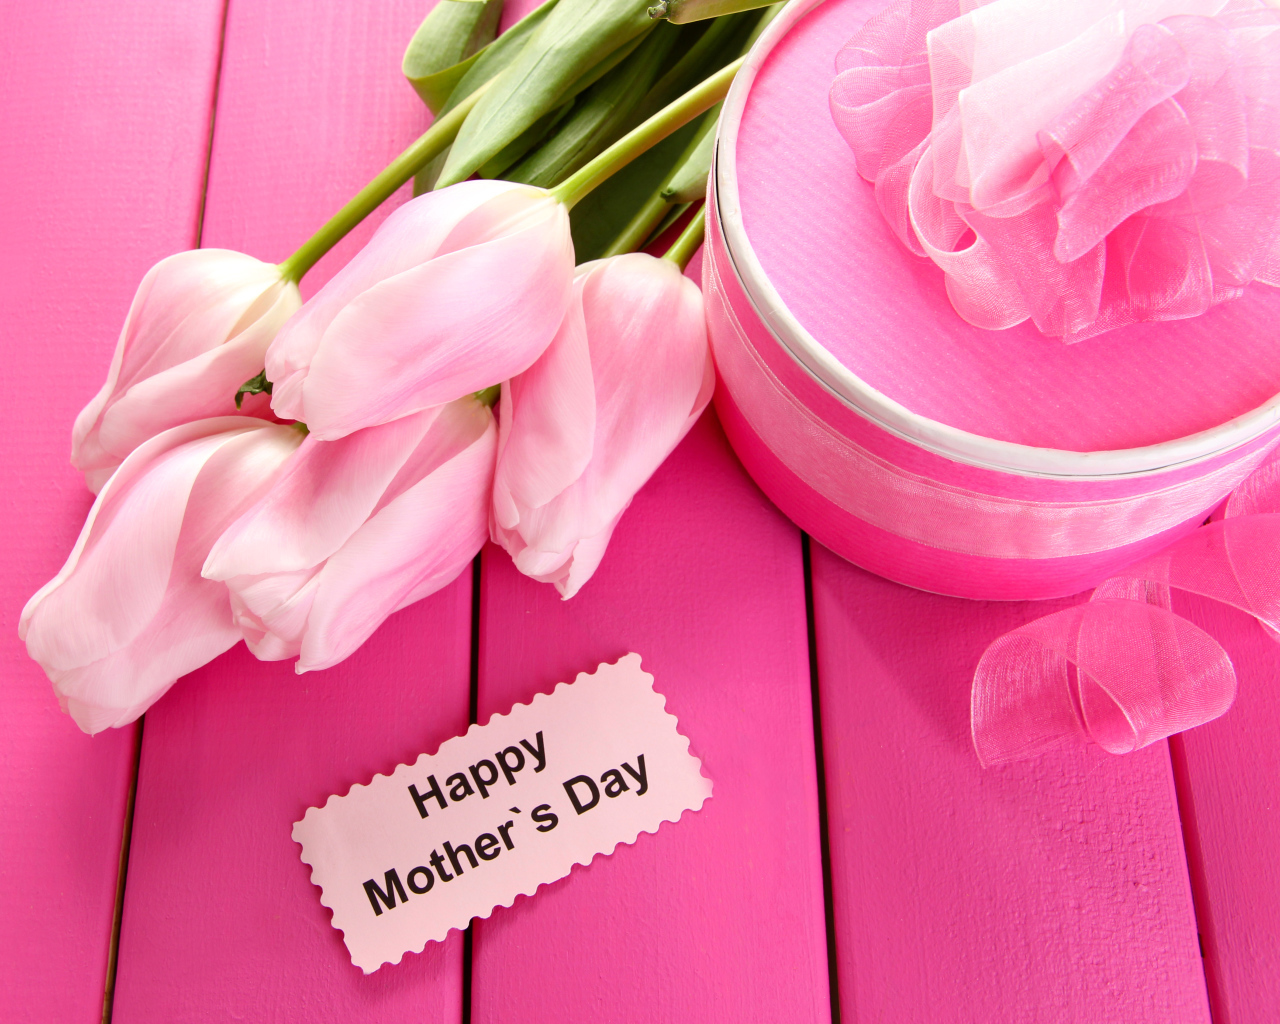 Букет нежных розовых тюльпанов с подарком на Международный женский день 8 марта